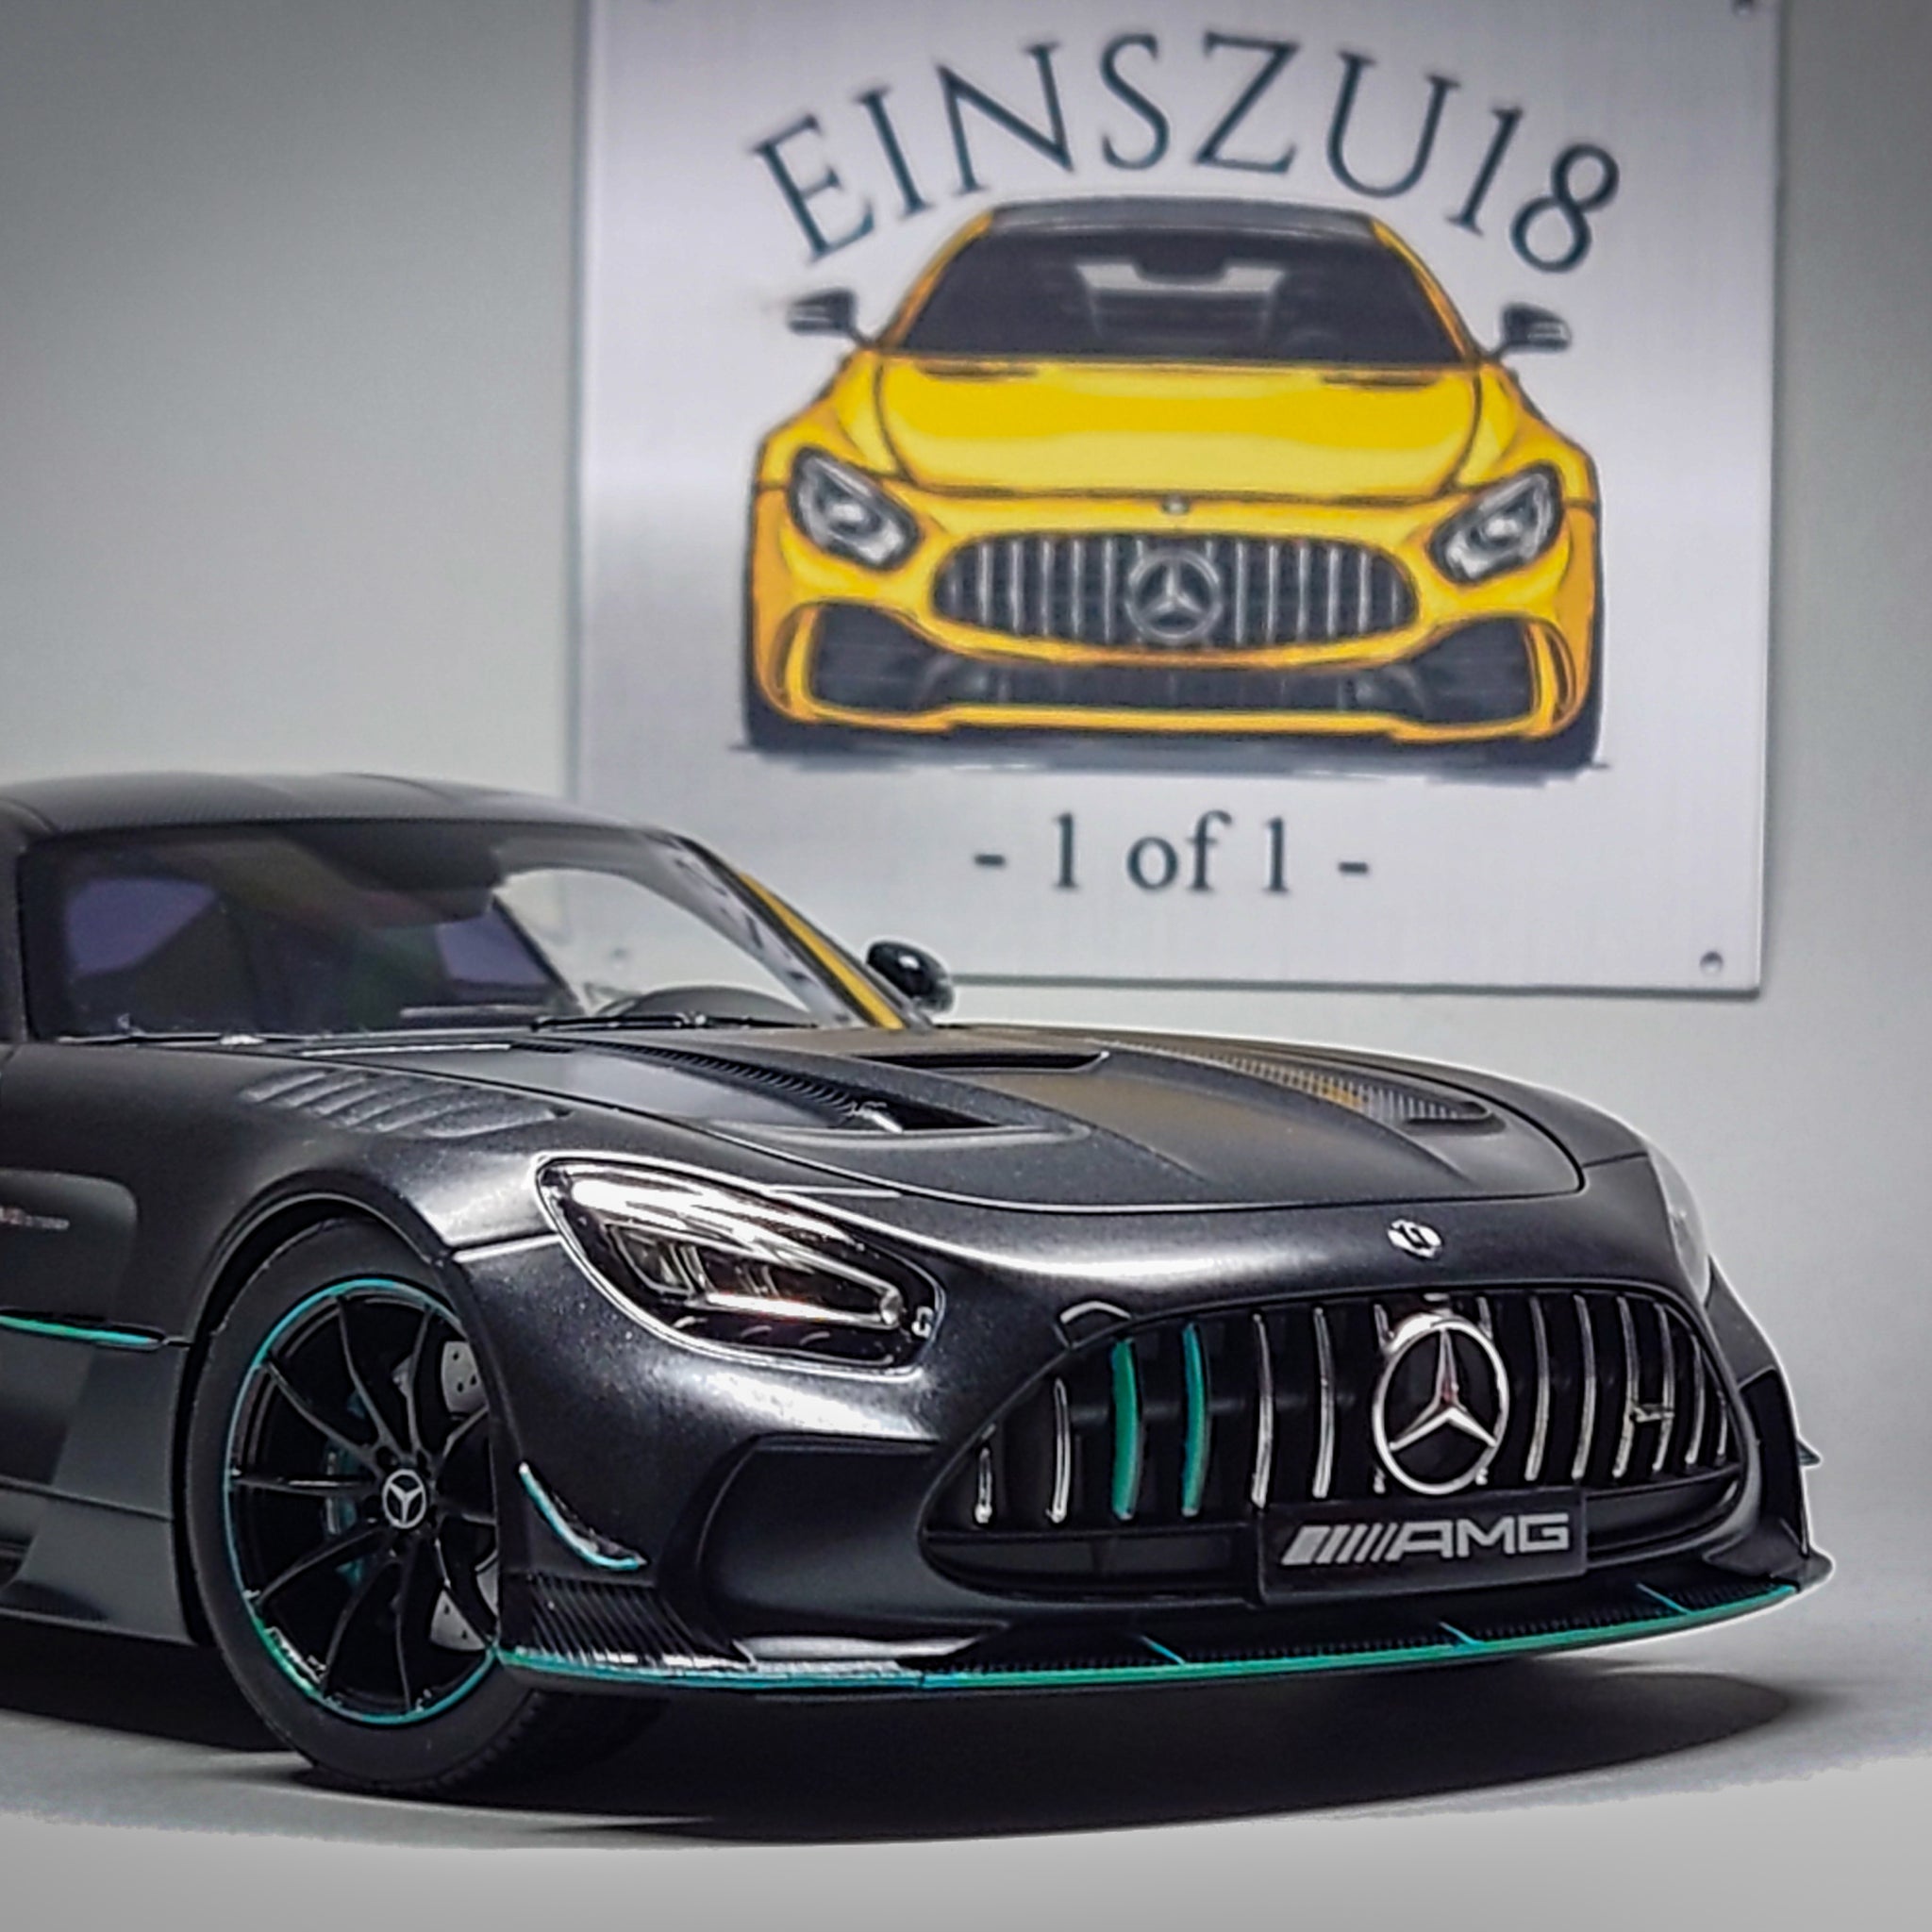 Mercedes-AMG GT Black Series Designo Graphitgrey Magno (EINSZU18 - 1 of 1)